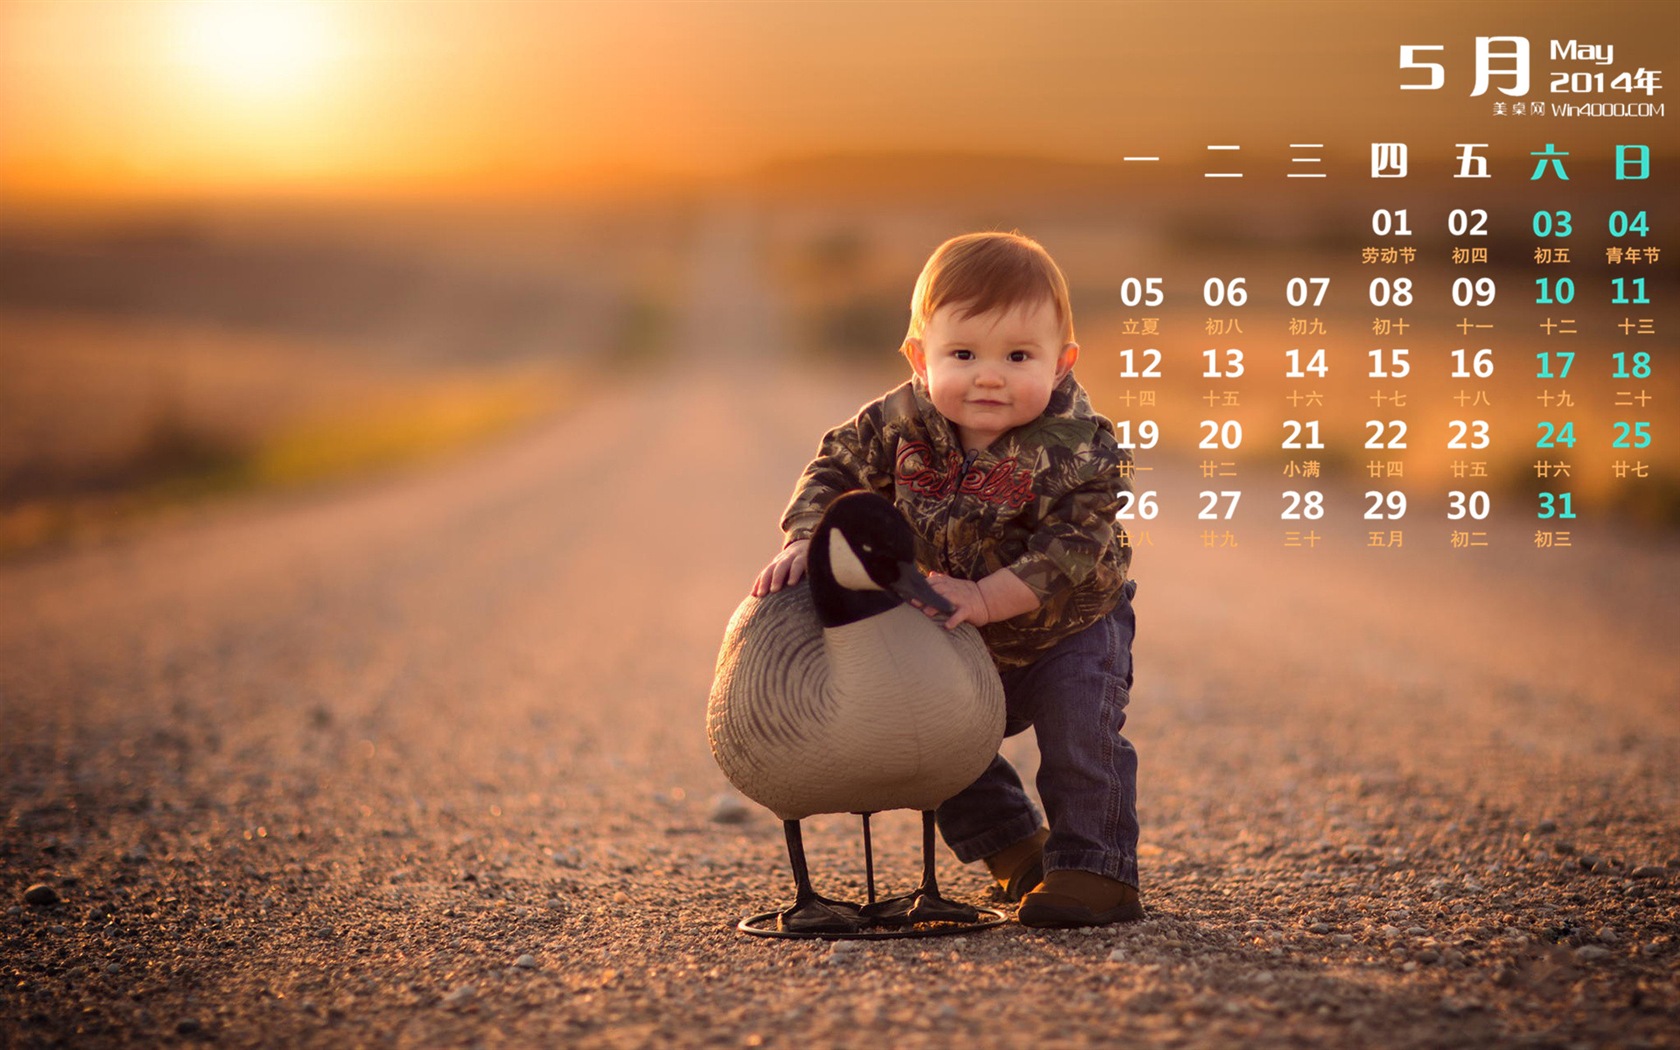 05. 2014 Kalendář tapety (1) #11 - 1680x1050